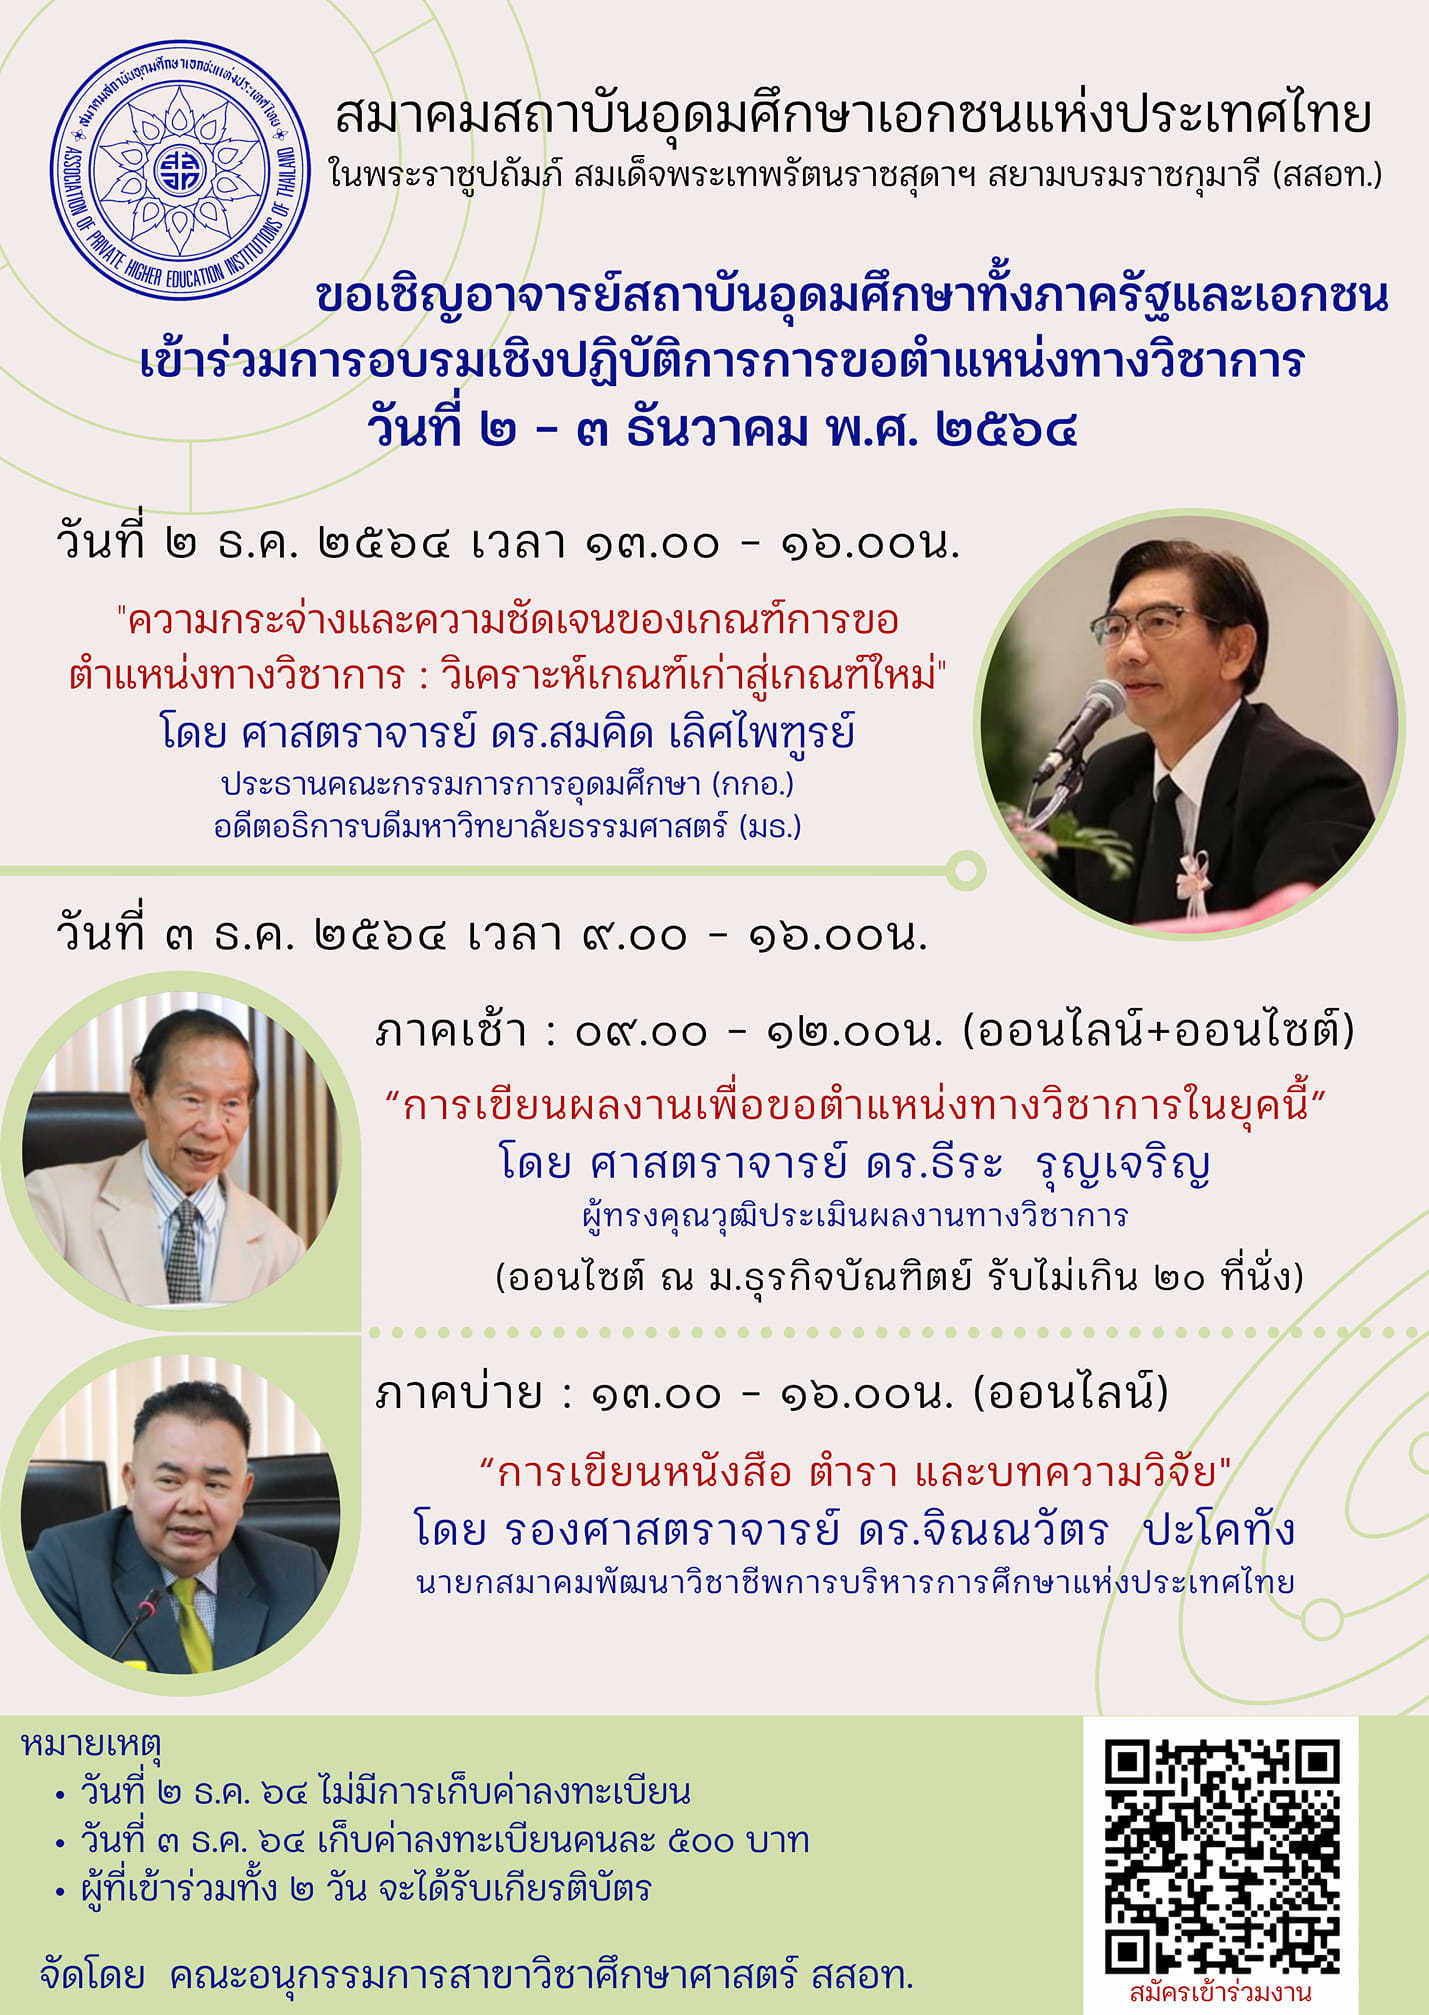 สมาคมสถาบันอุดมศึกษาเอกชนแห่งประเทศไทย ขอเชิญอาจารย์สถาบันอุดมศึกษาเข้าร่วมการอบรมเชิงปฏิบัติการการขอตำแหน่งทางวิชาการ